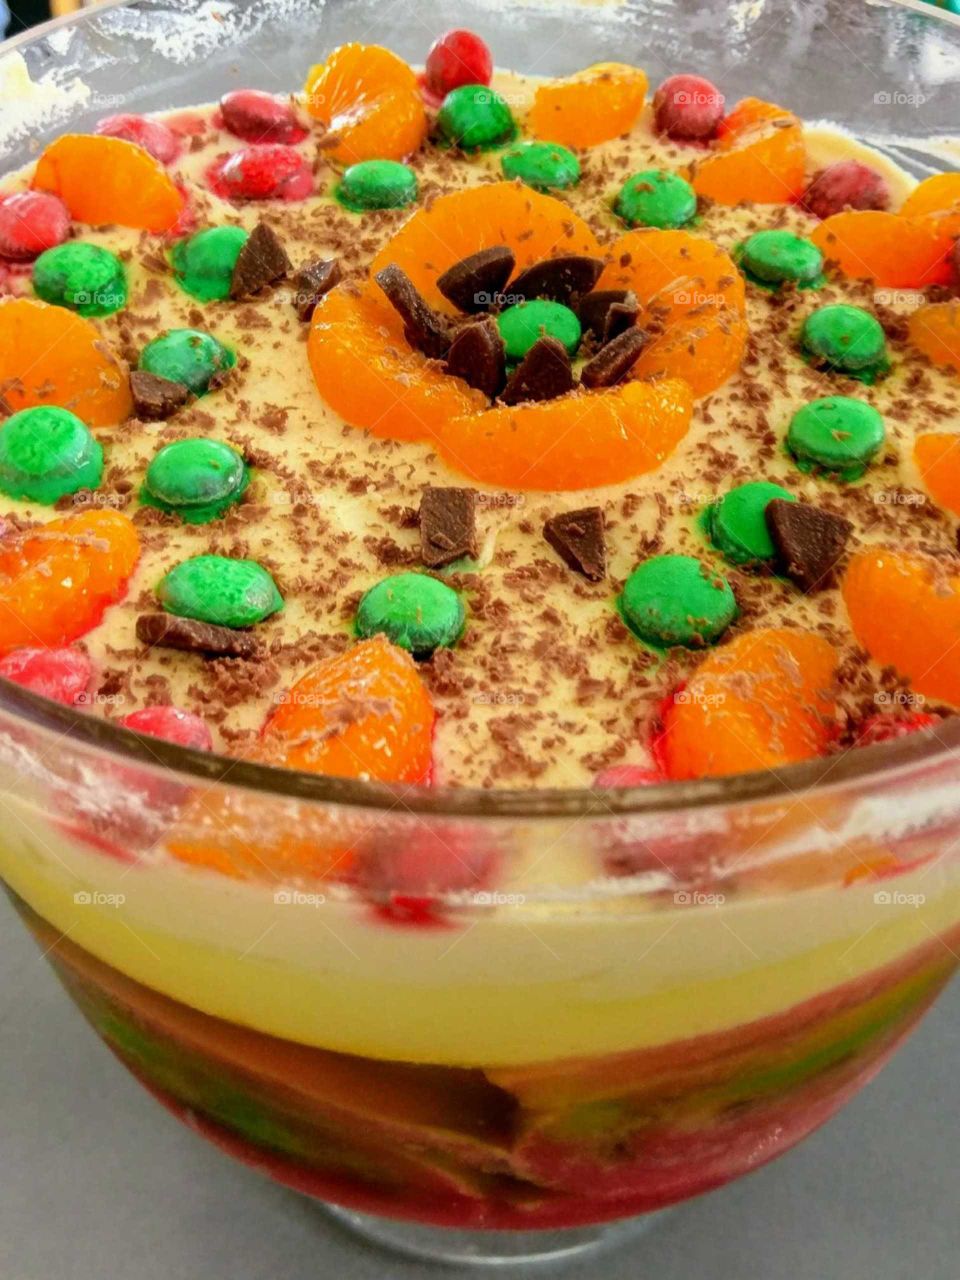 Homemade Trifle!